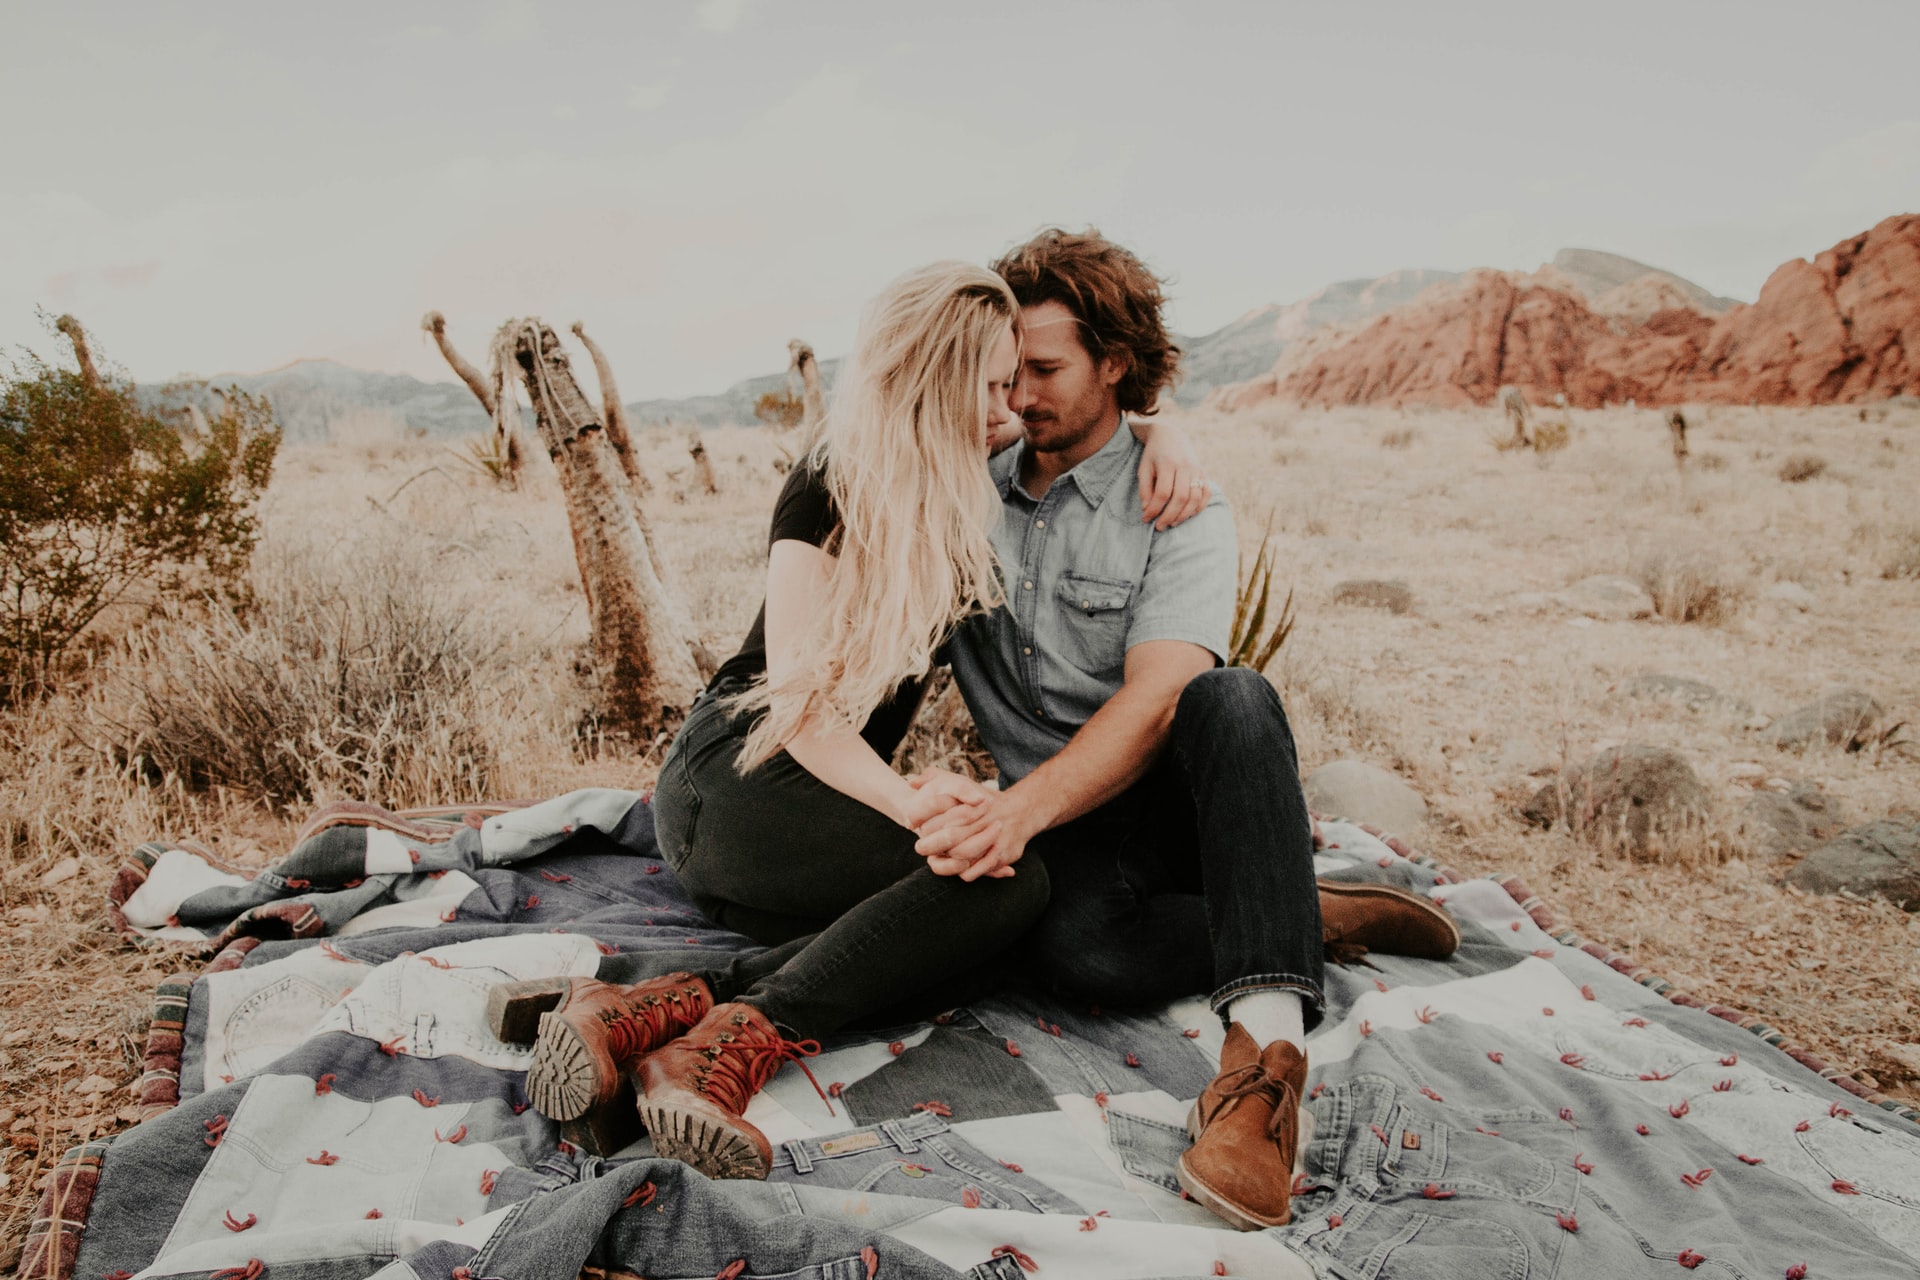 Mann und Frau sitzen draußen auf einer Decke und halten Händchen